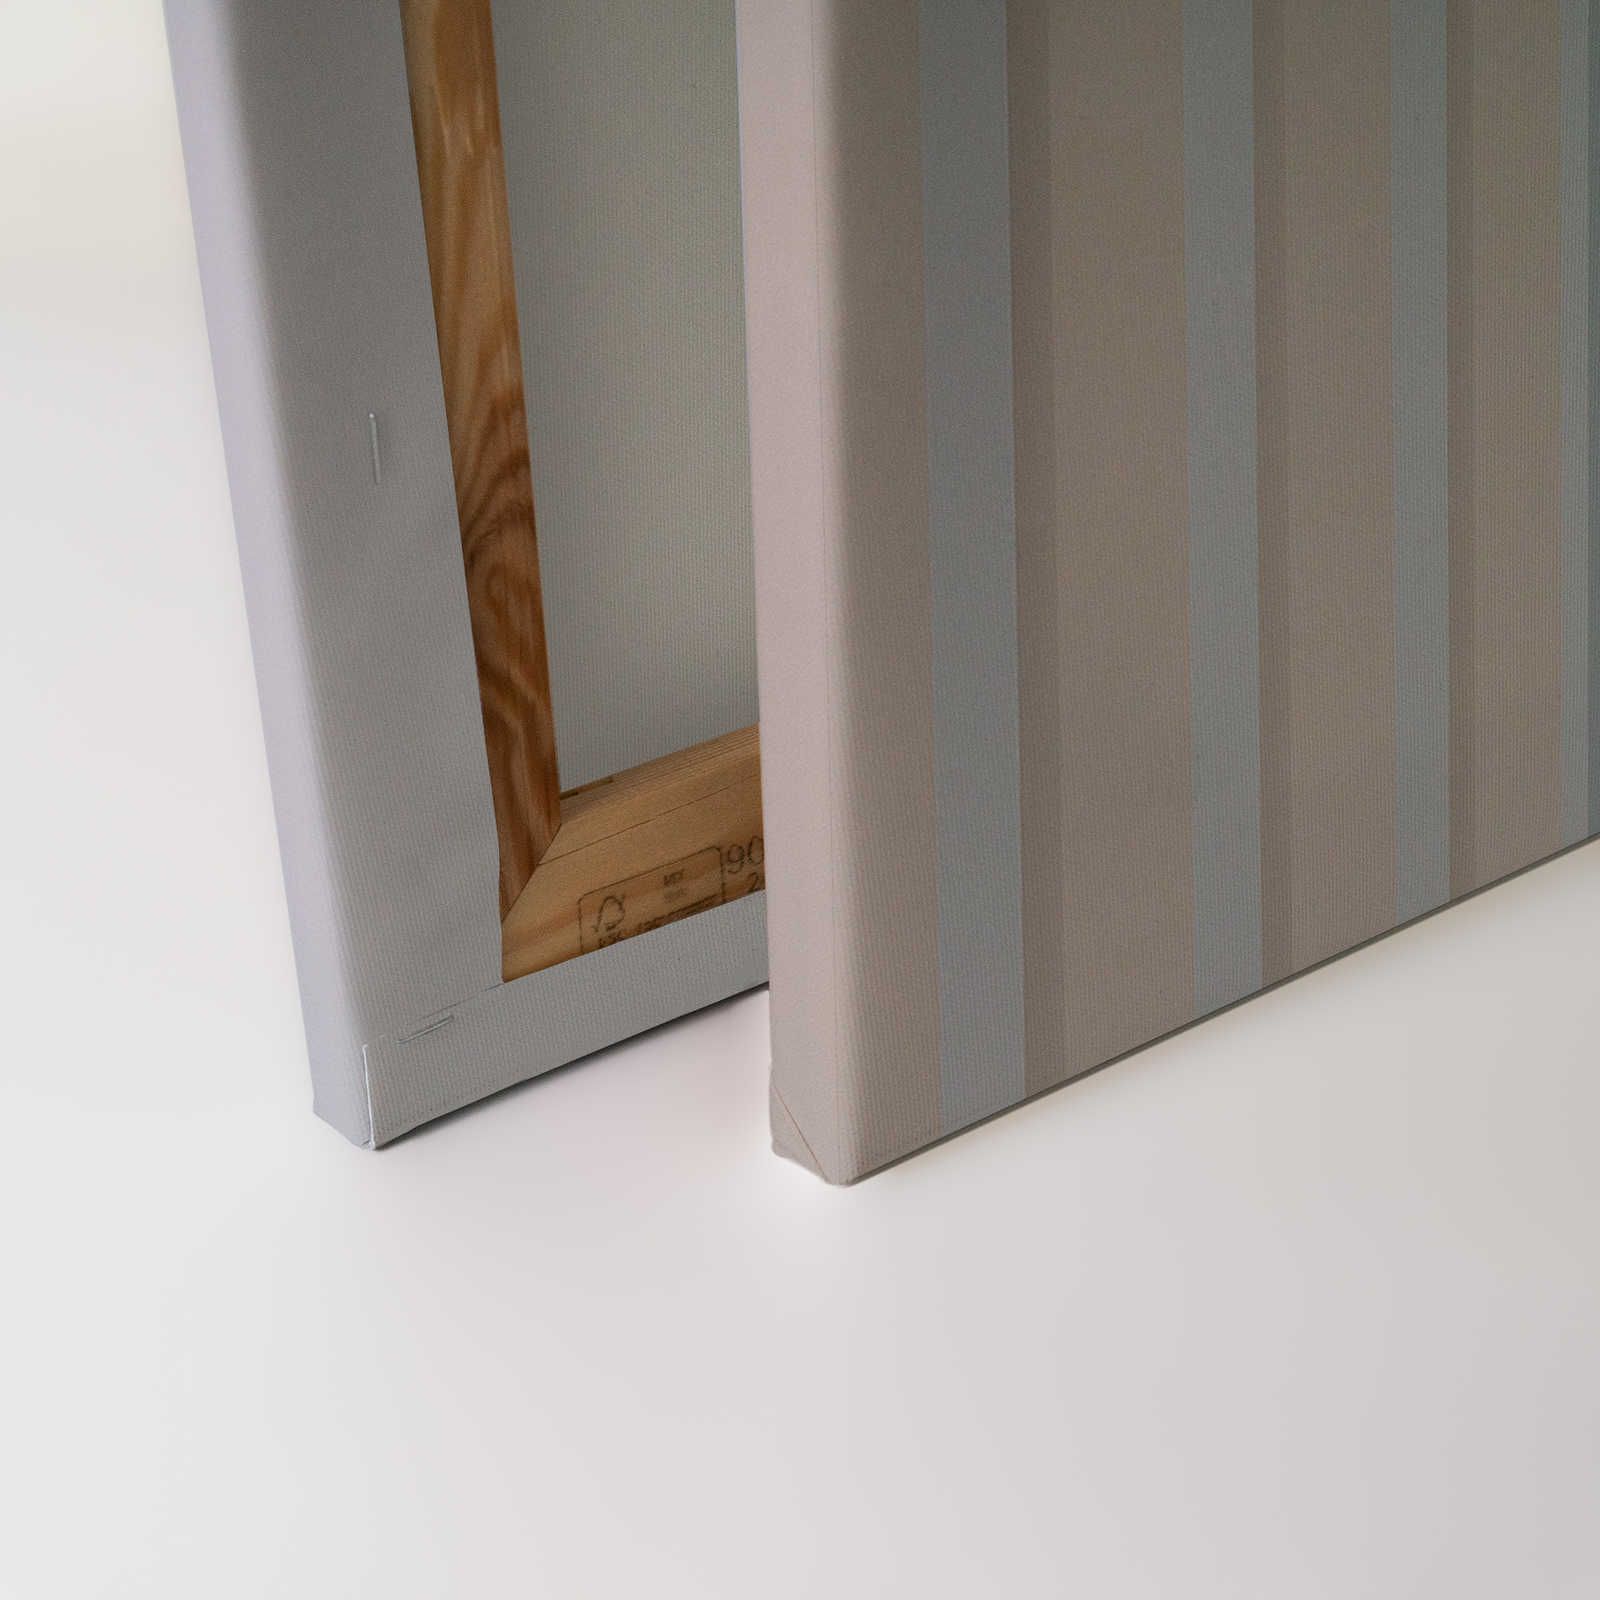             Illusion Room 2 - Toile 3D rayée bleu et gris - 0,90 m x 0,60 m
        